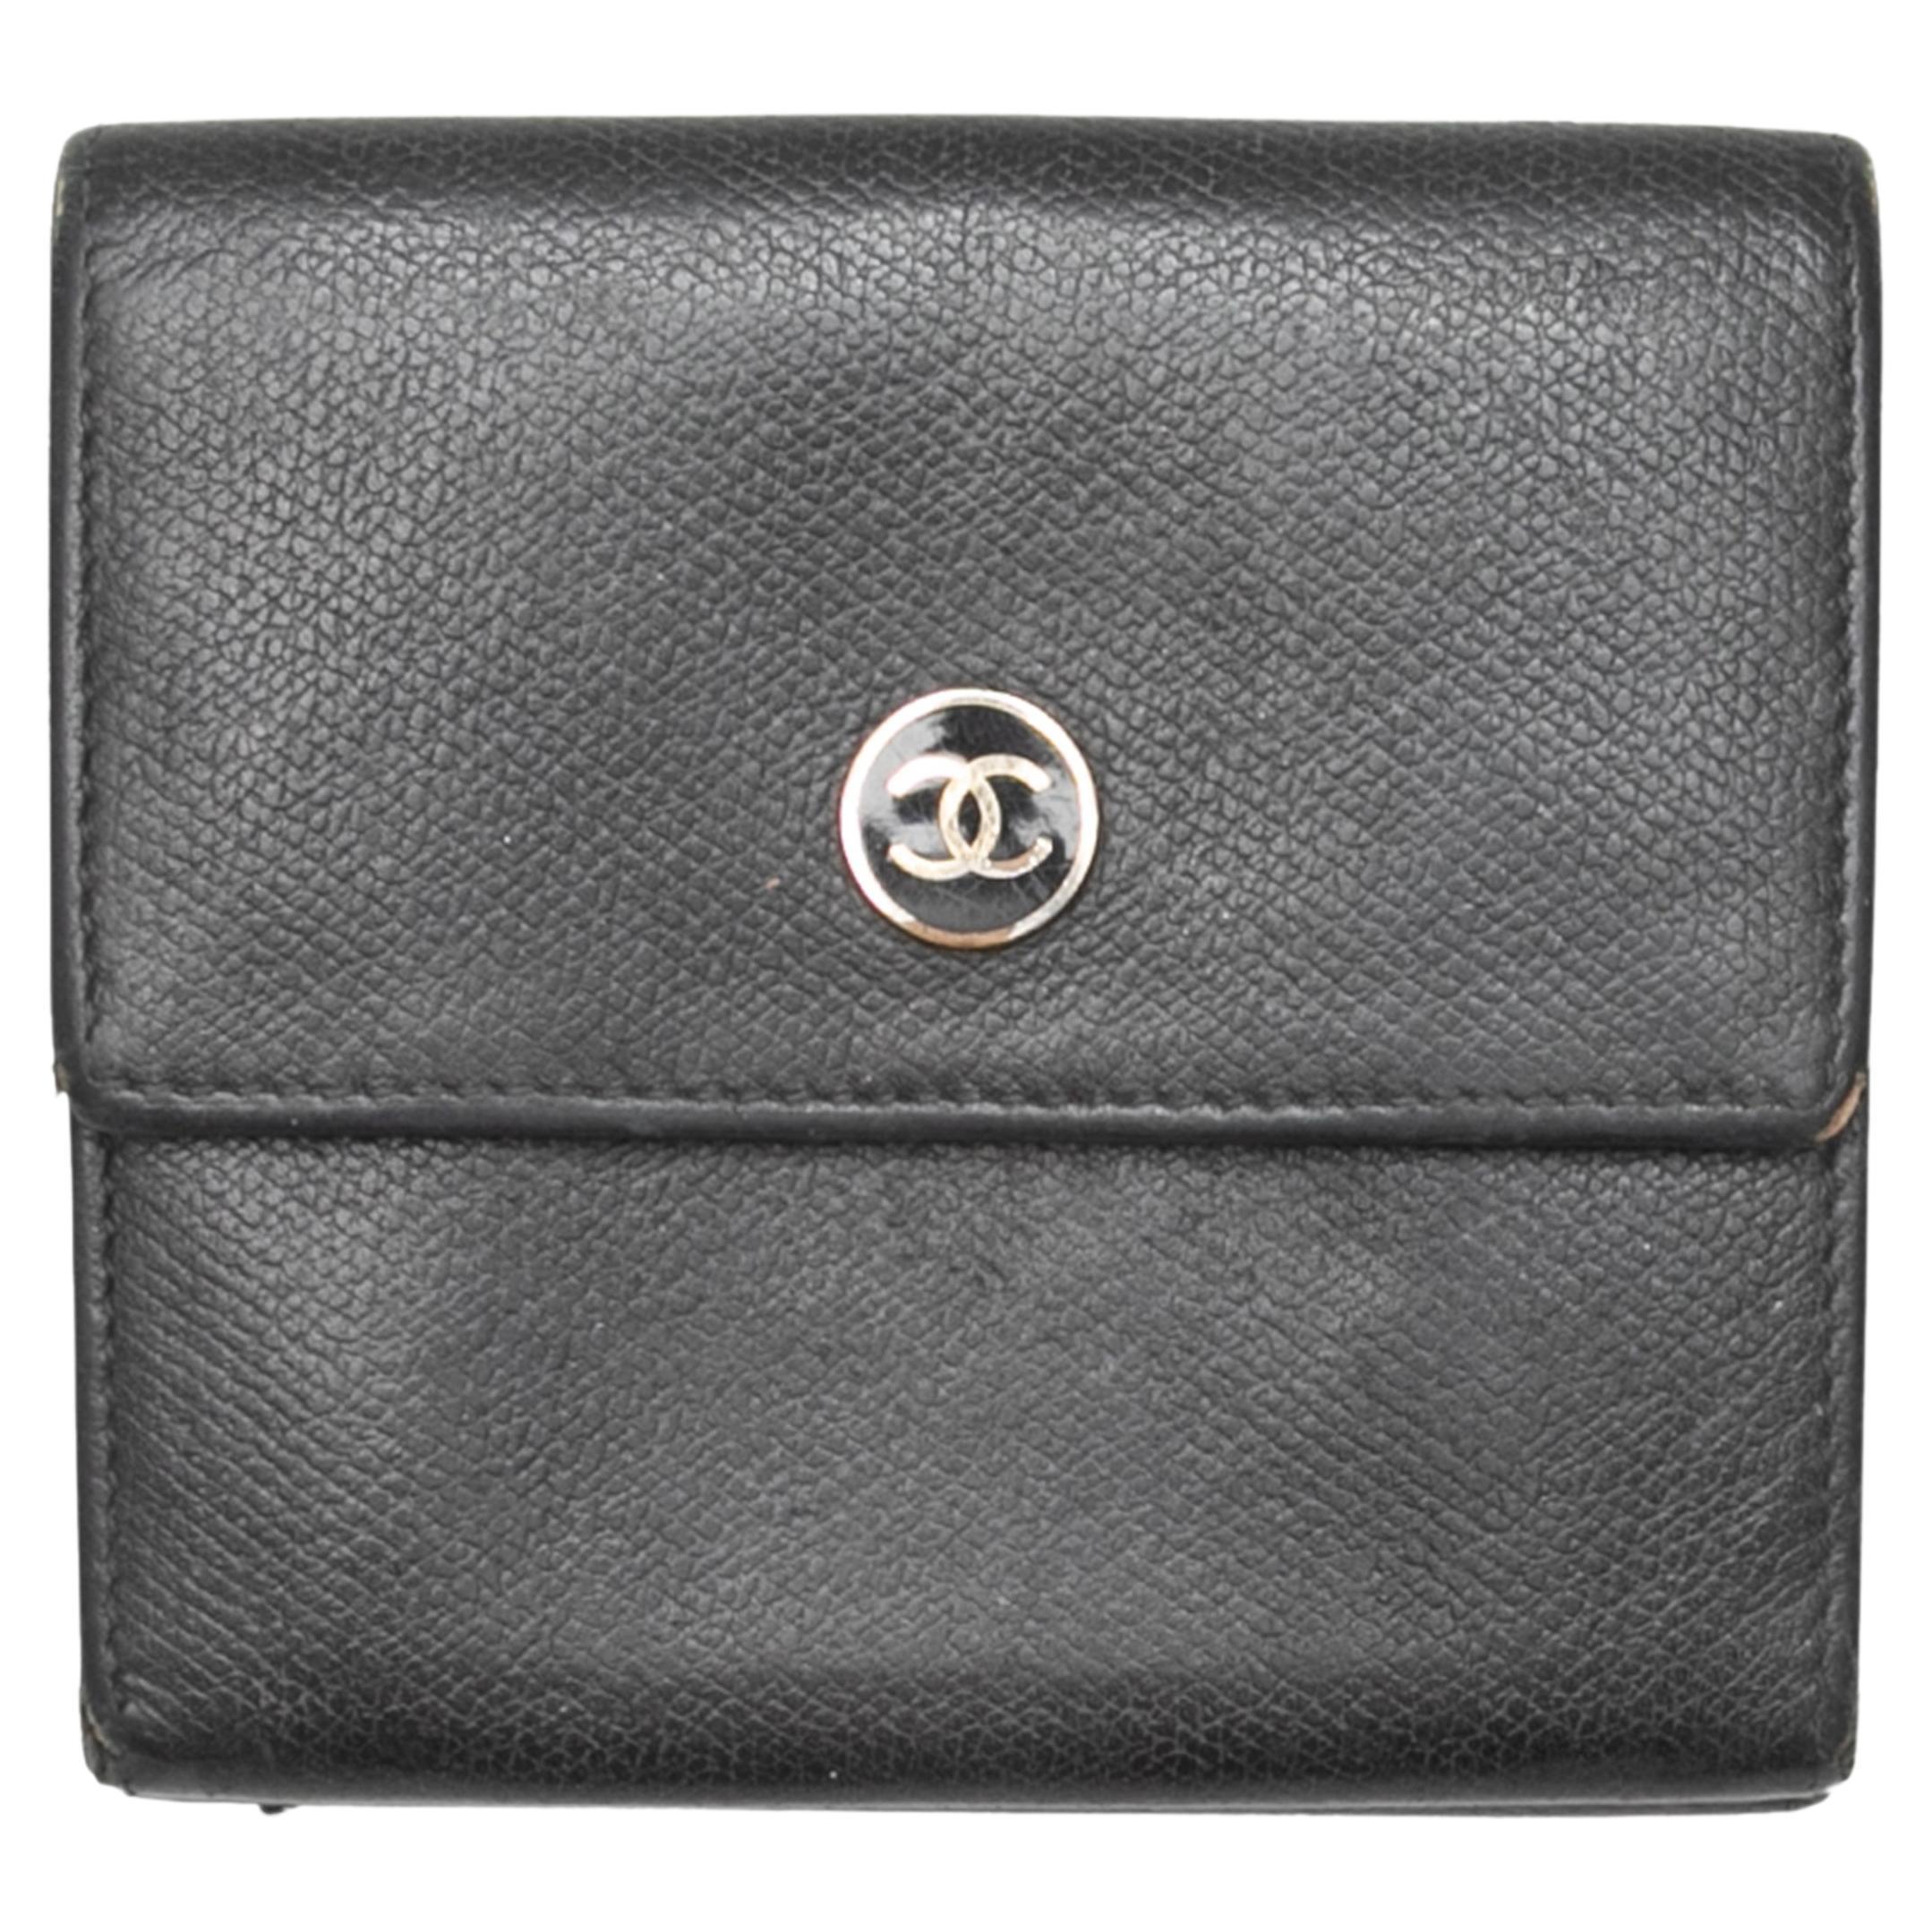 Vintage Black Chanel Leather Wallet For Sale